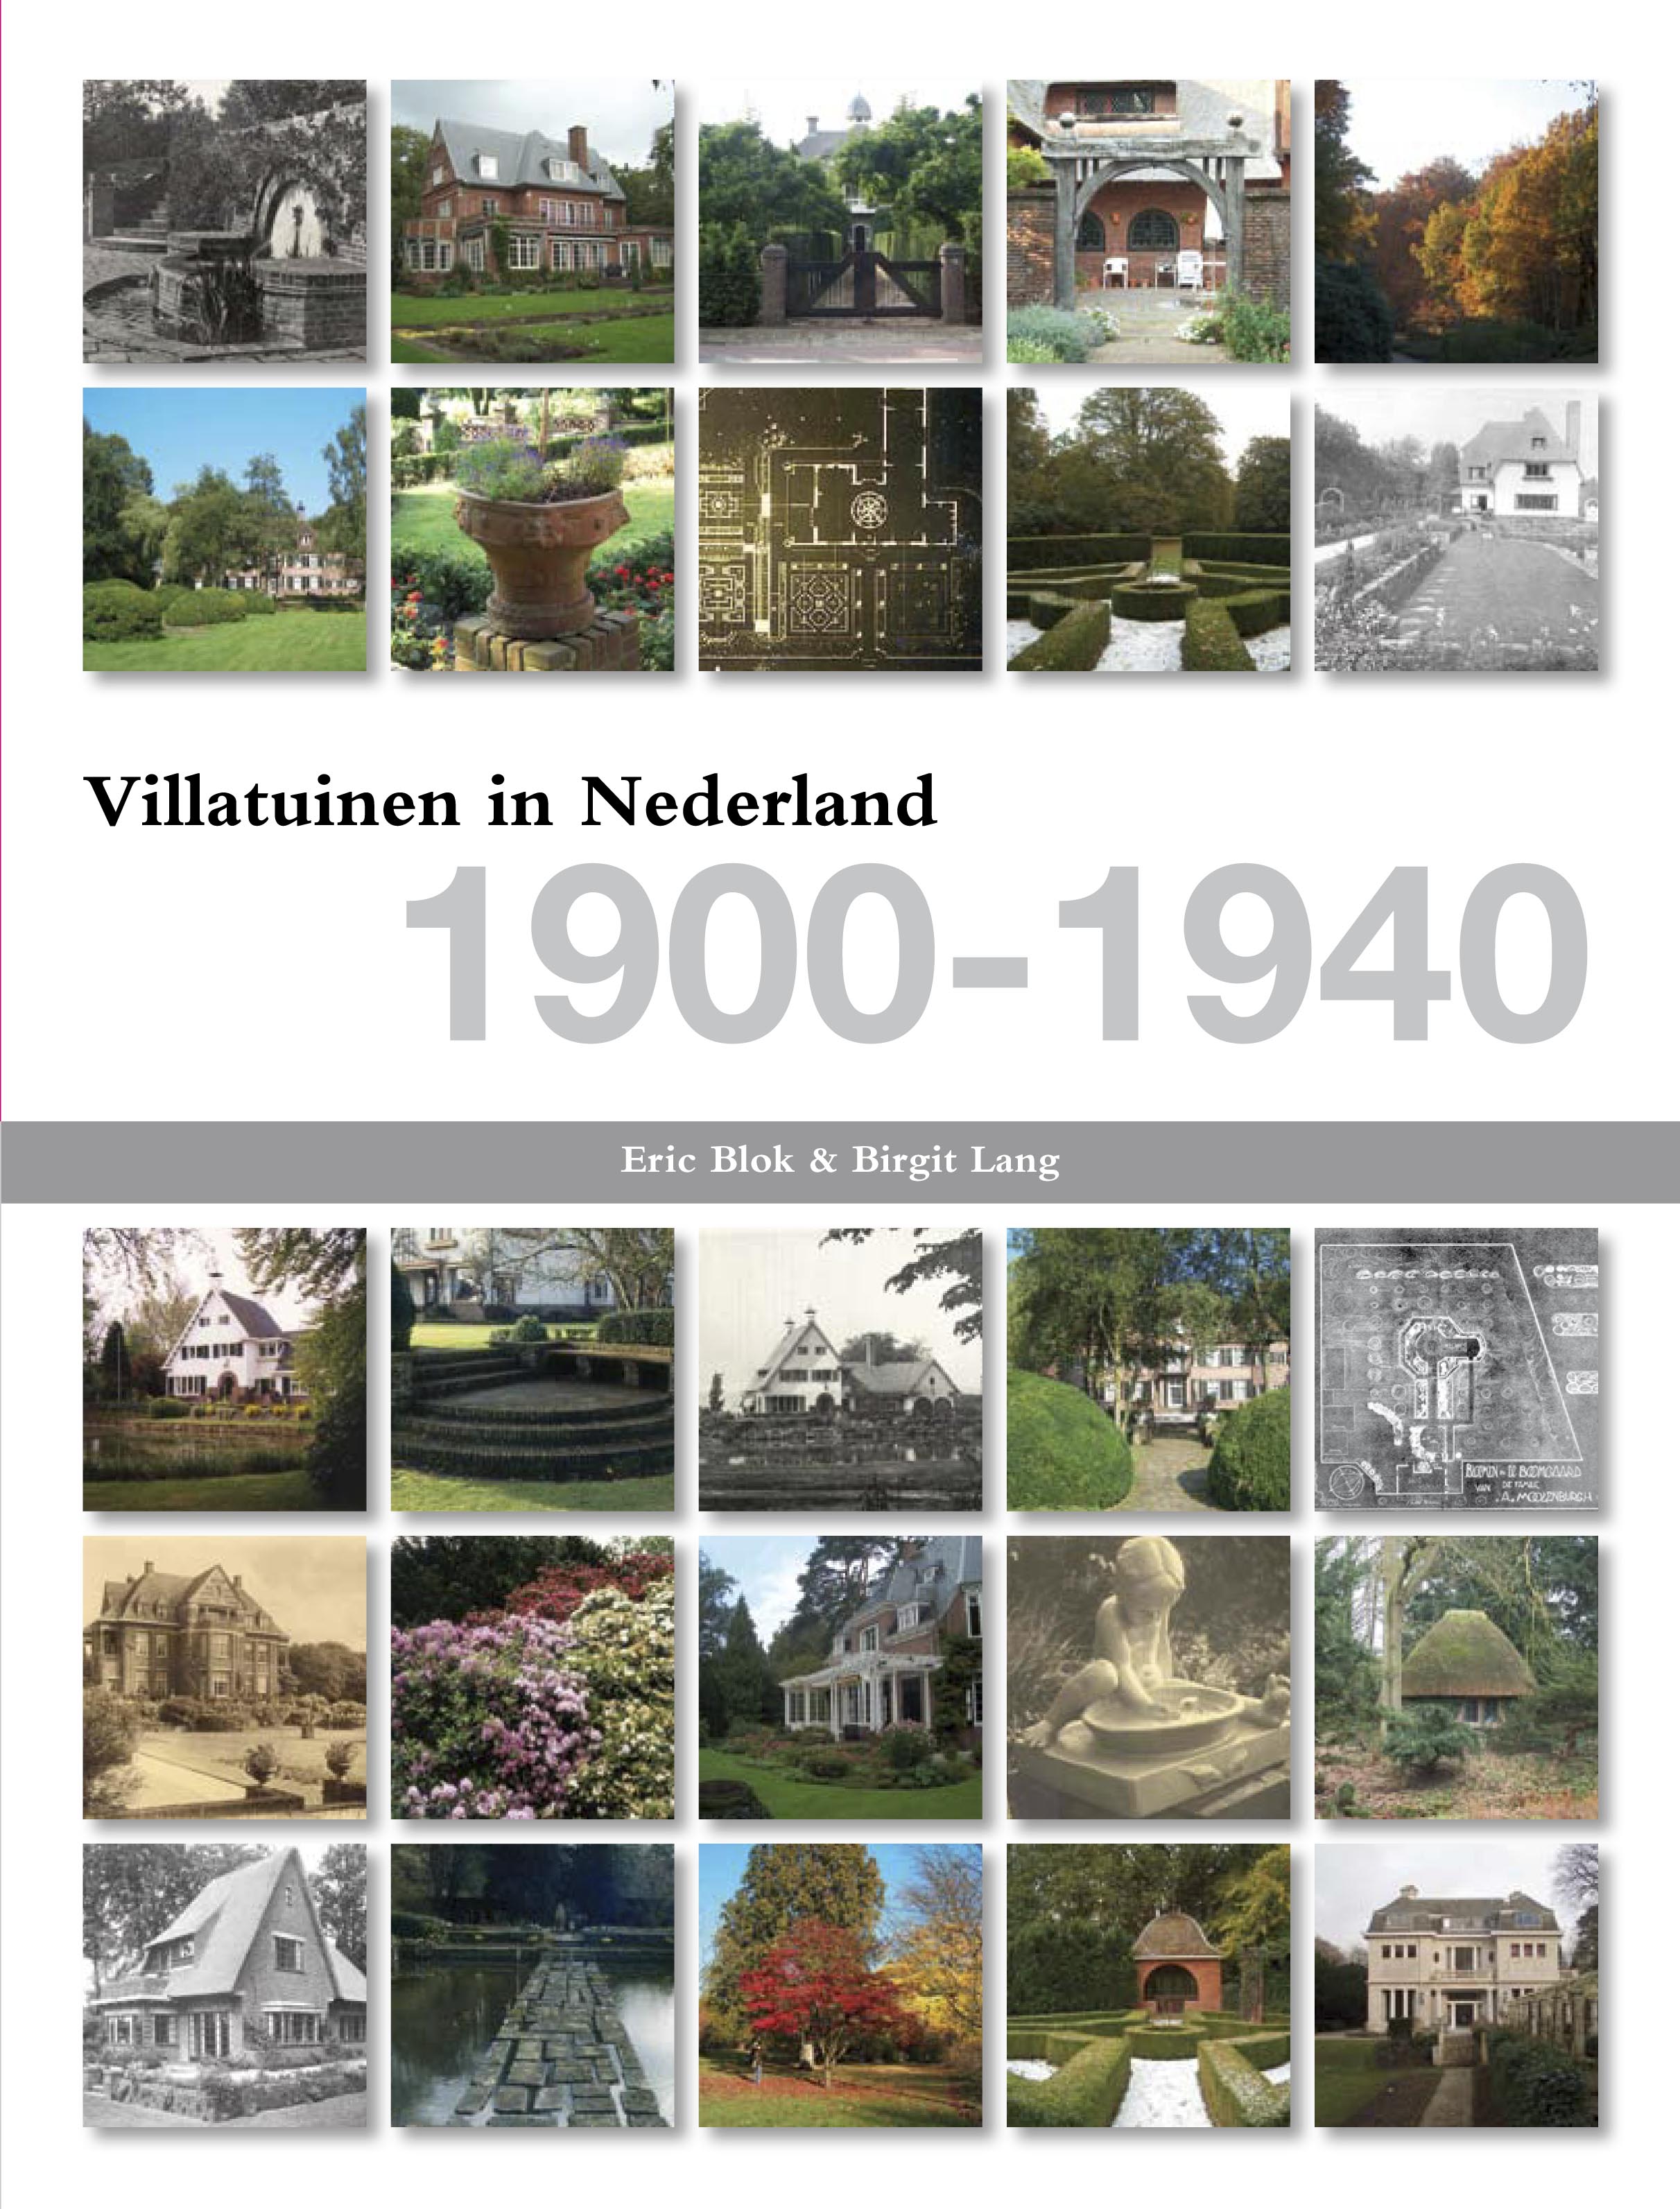 Eric Blok & Birgit Lang, Villatuinen in Nederland  1900-1940